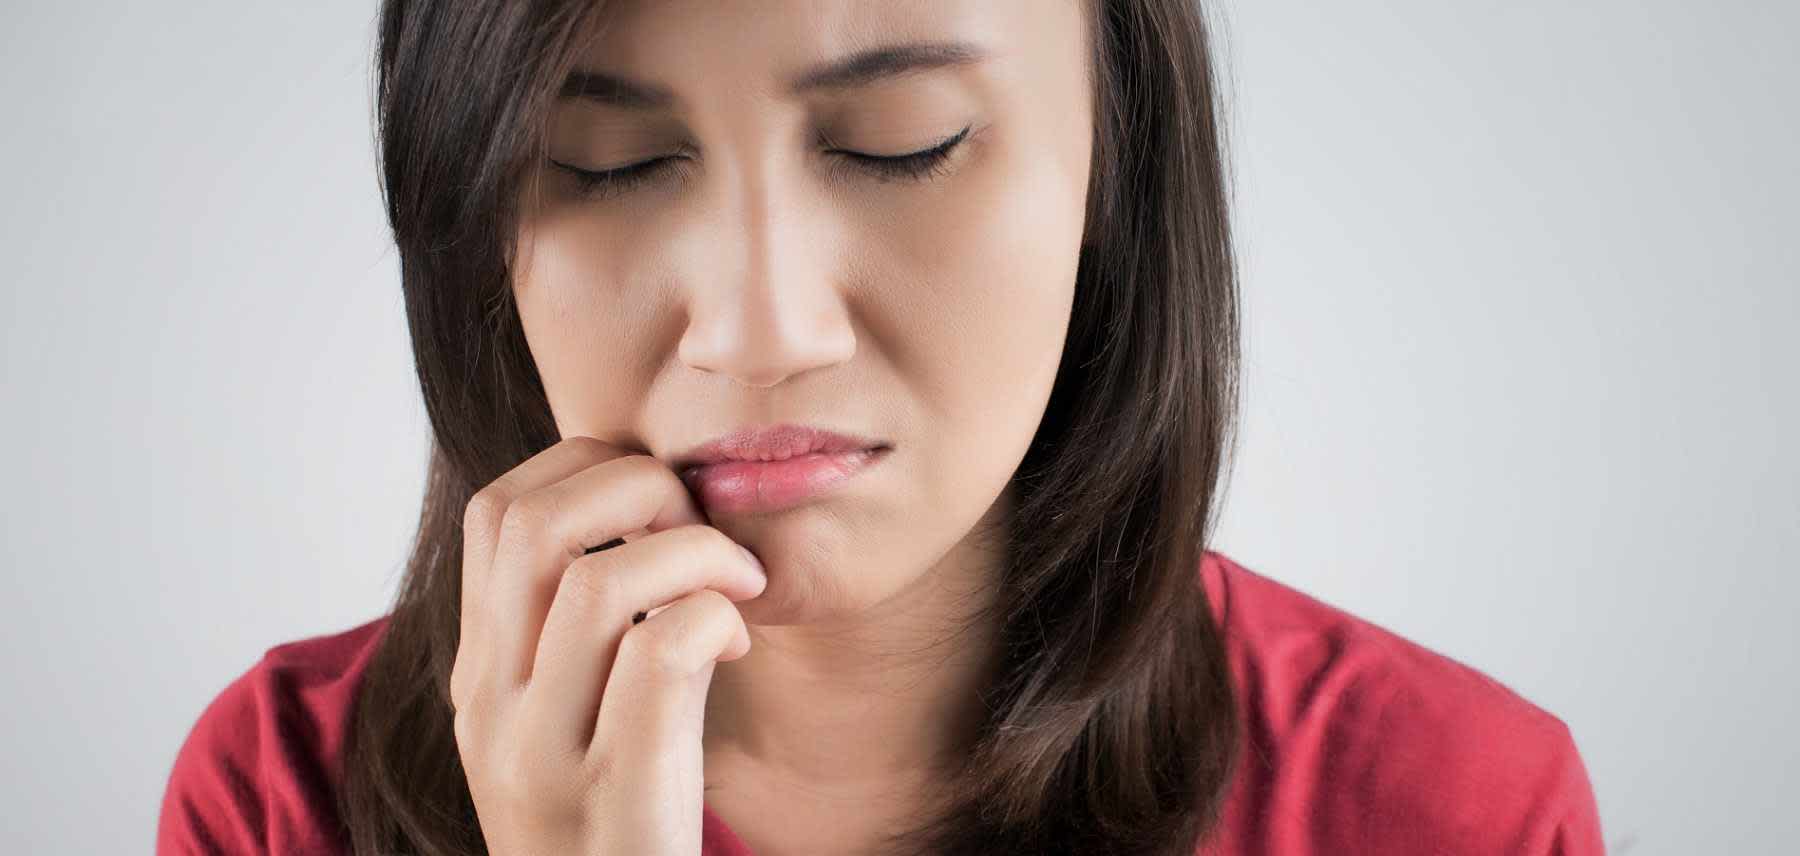 Woman experiencing symptoms of oral syphilis